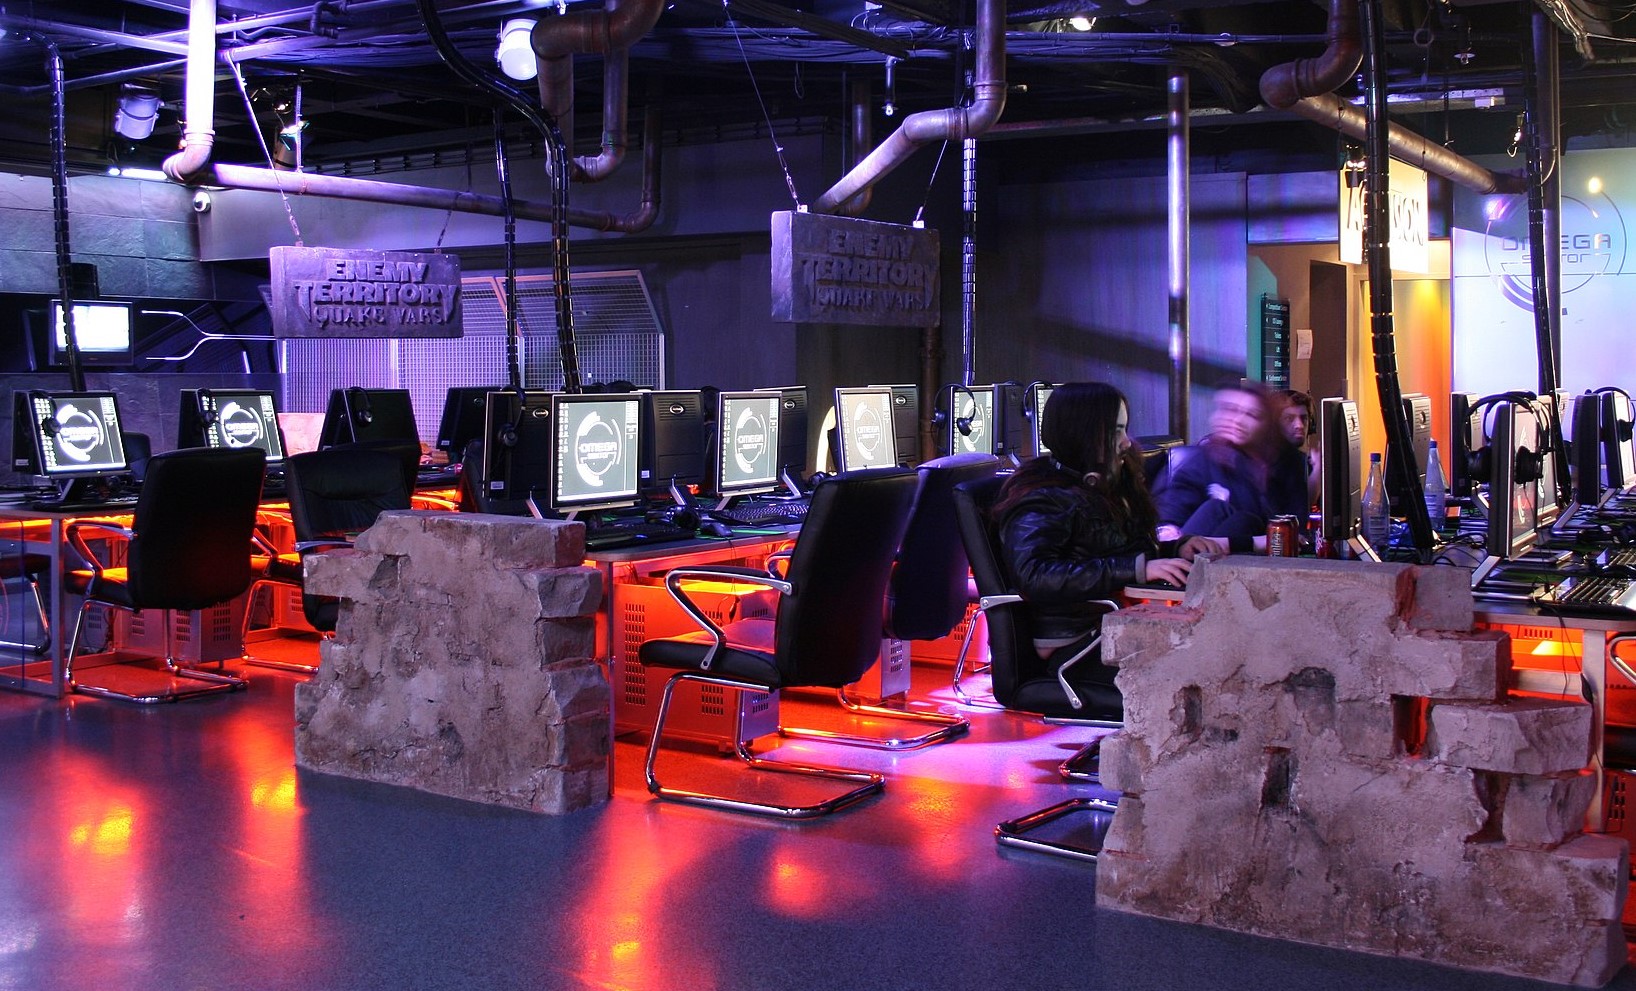 La imagen muestra un Gaming Center